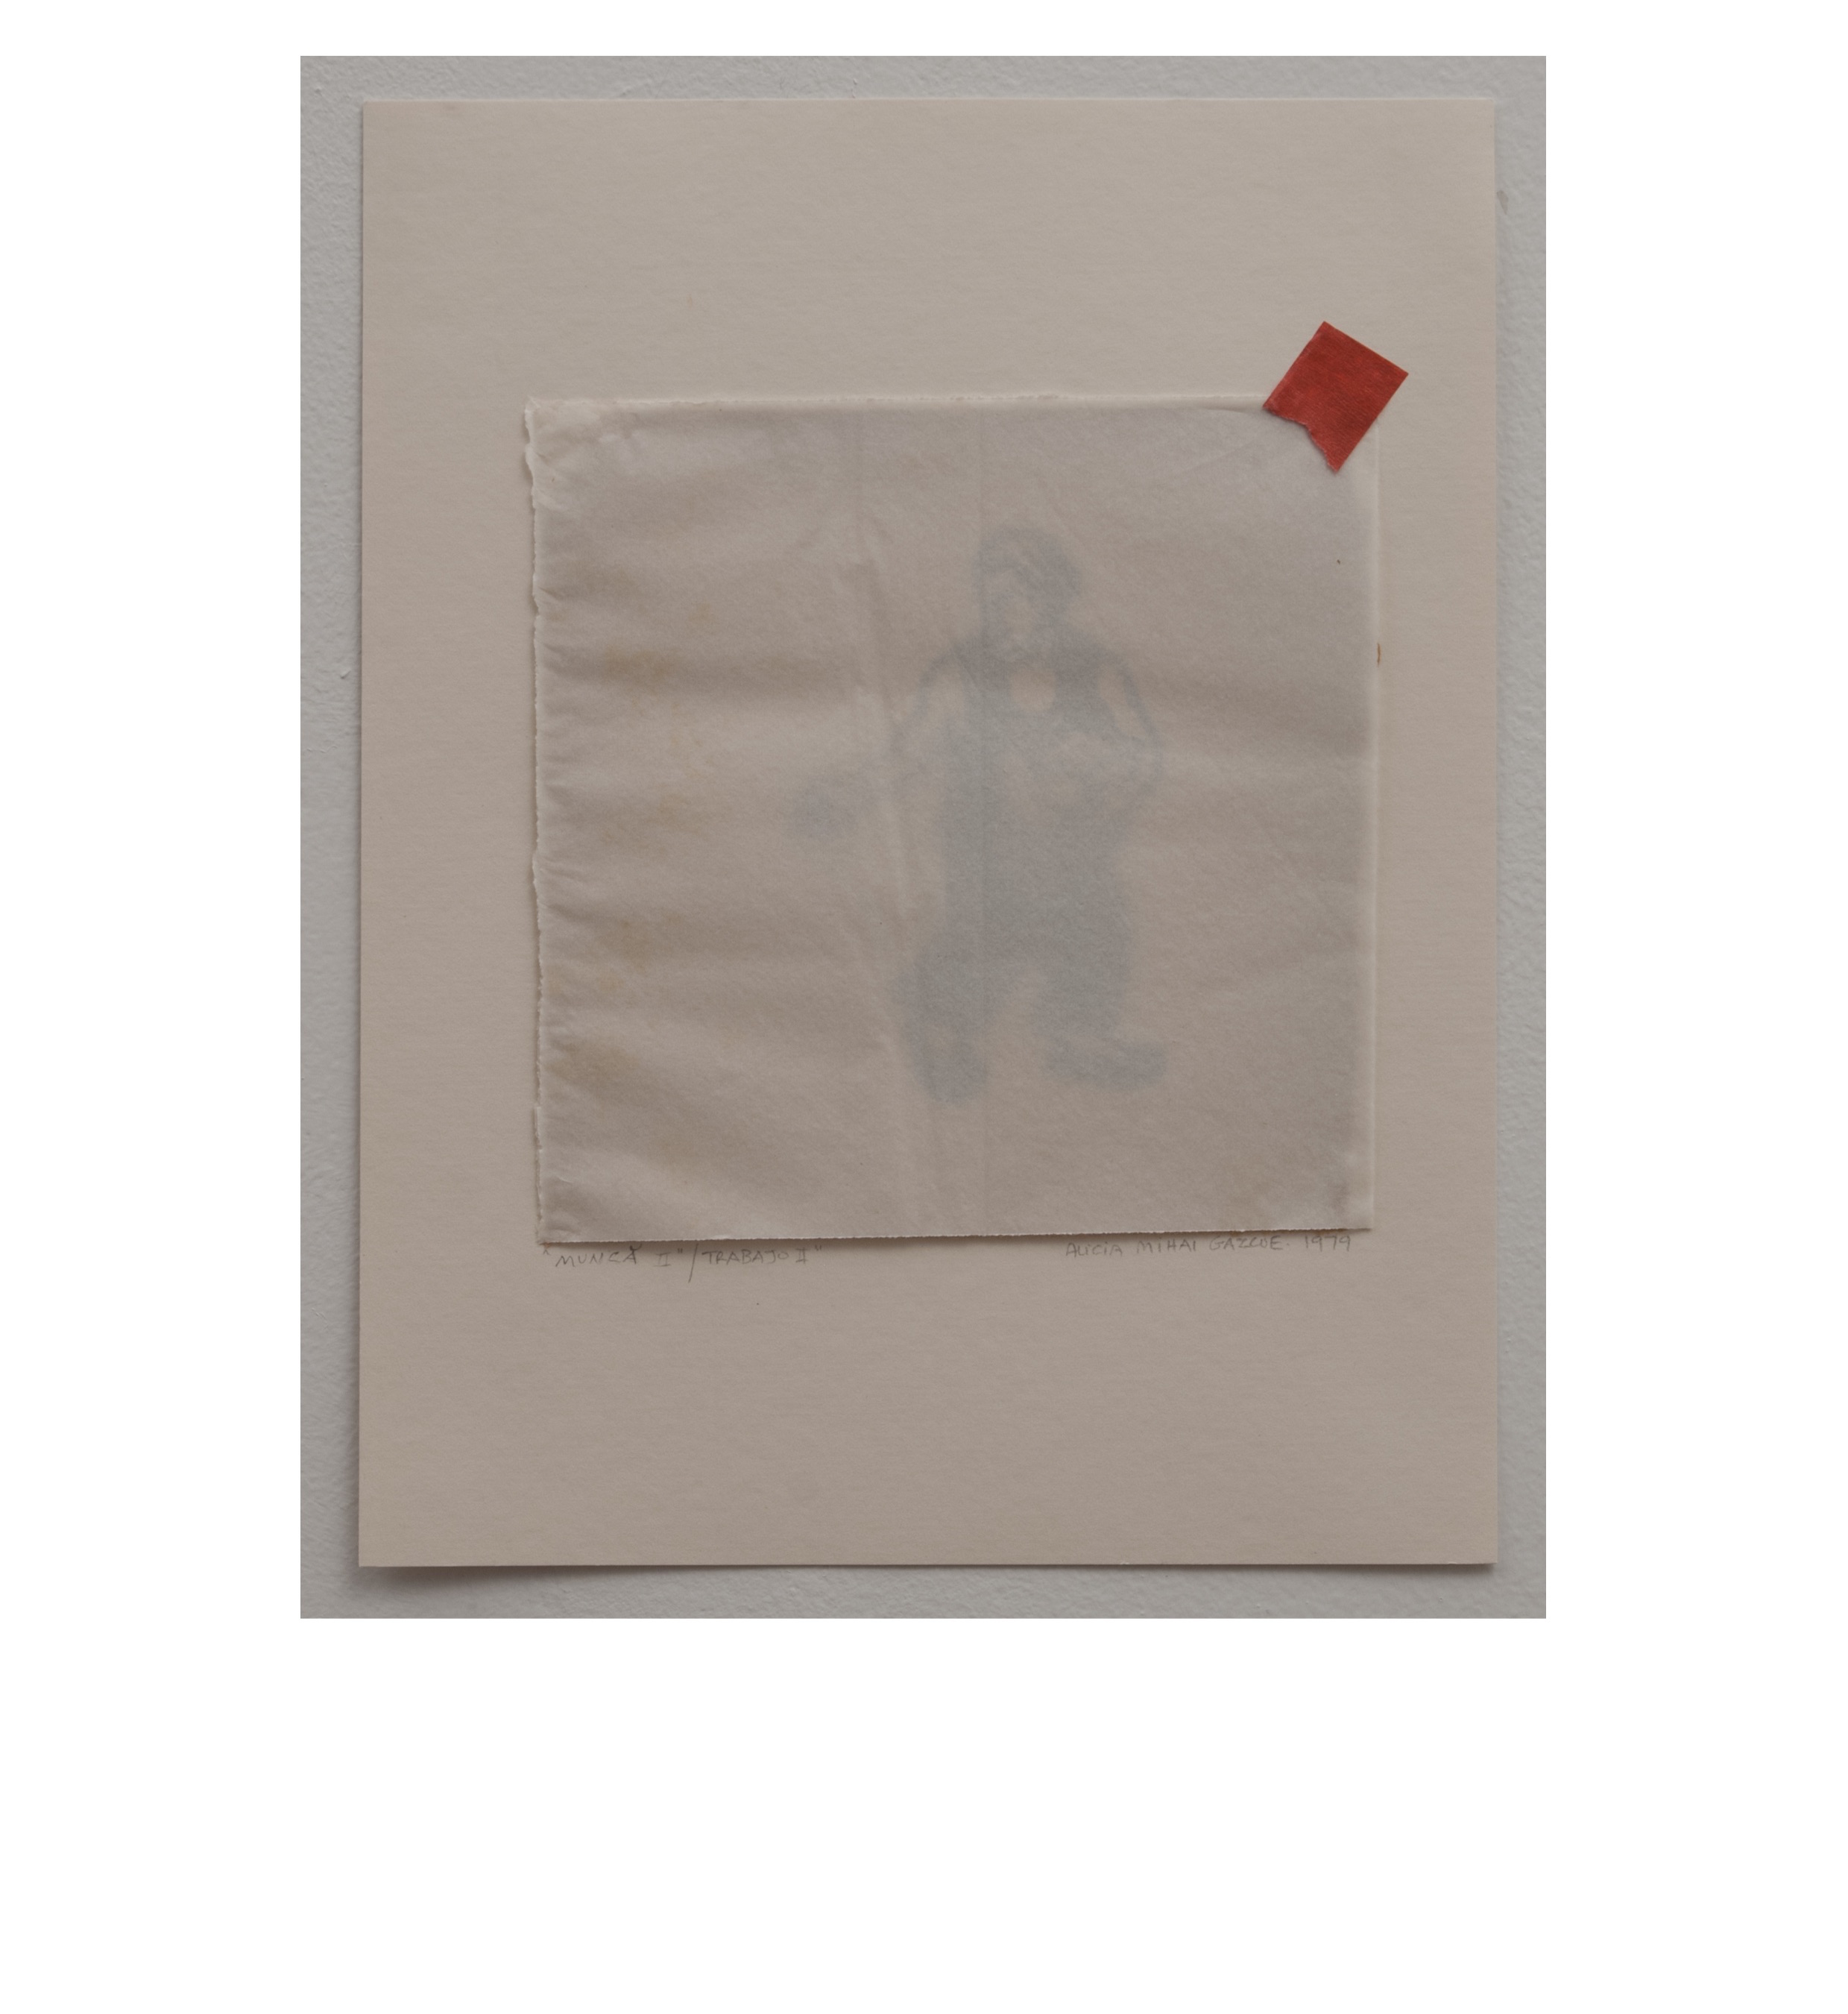 Alicia Mihai Gazcue - Munca II : Trabajo II (Work). 1979. Papel impreso, papel transparente y cinta adhesiva. 20,32 x 31,75 cm. Único